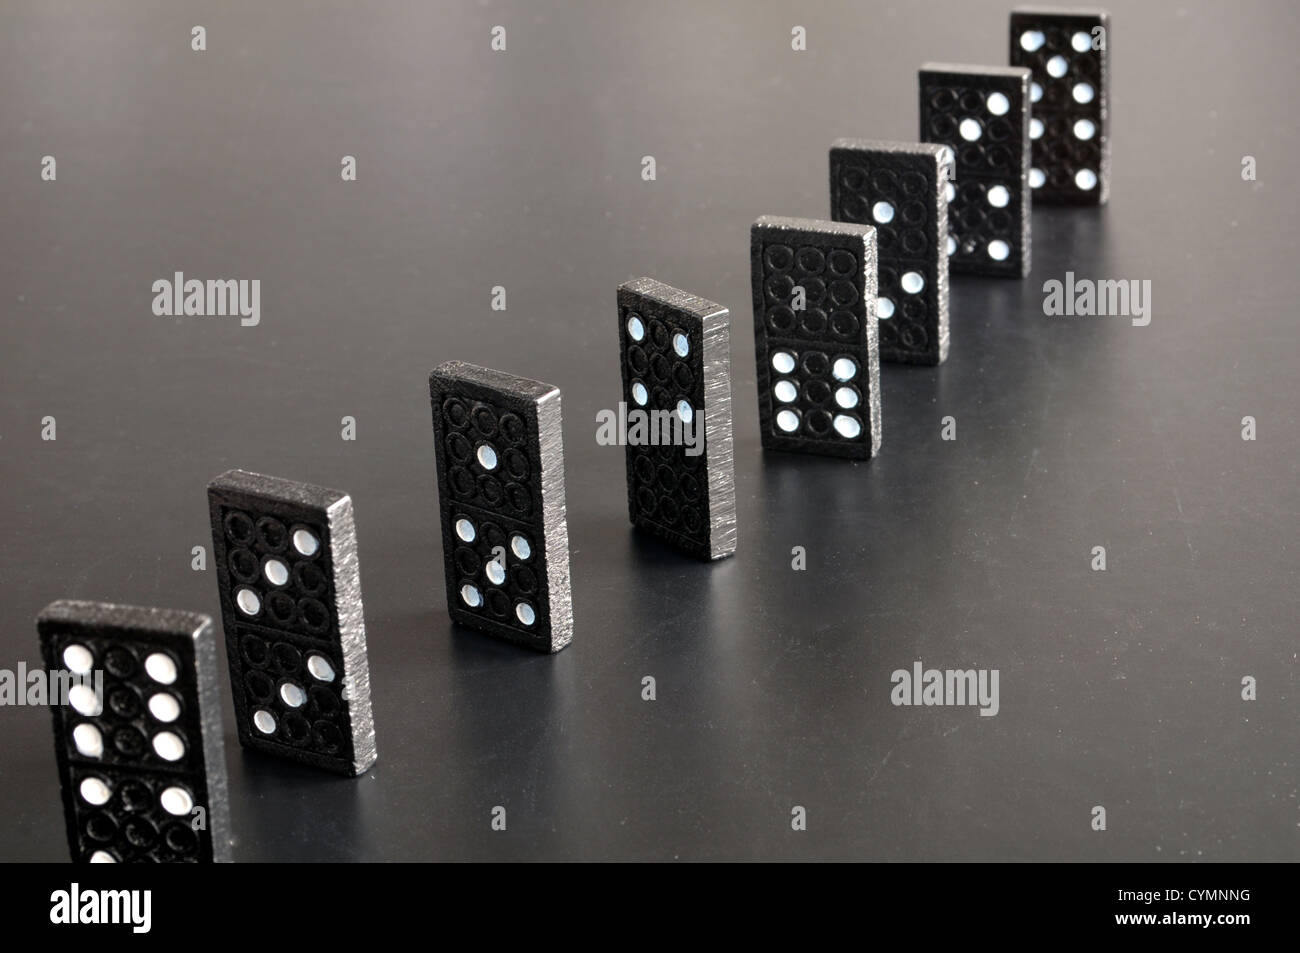 Finanzkrise-Konzept mit Domino-Spiel auf schwarzem Hintergrund Stockfoto